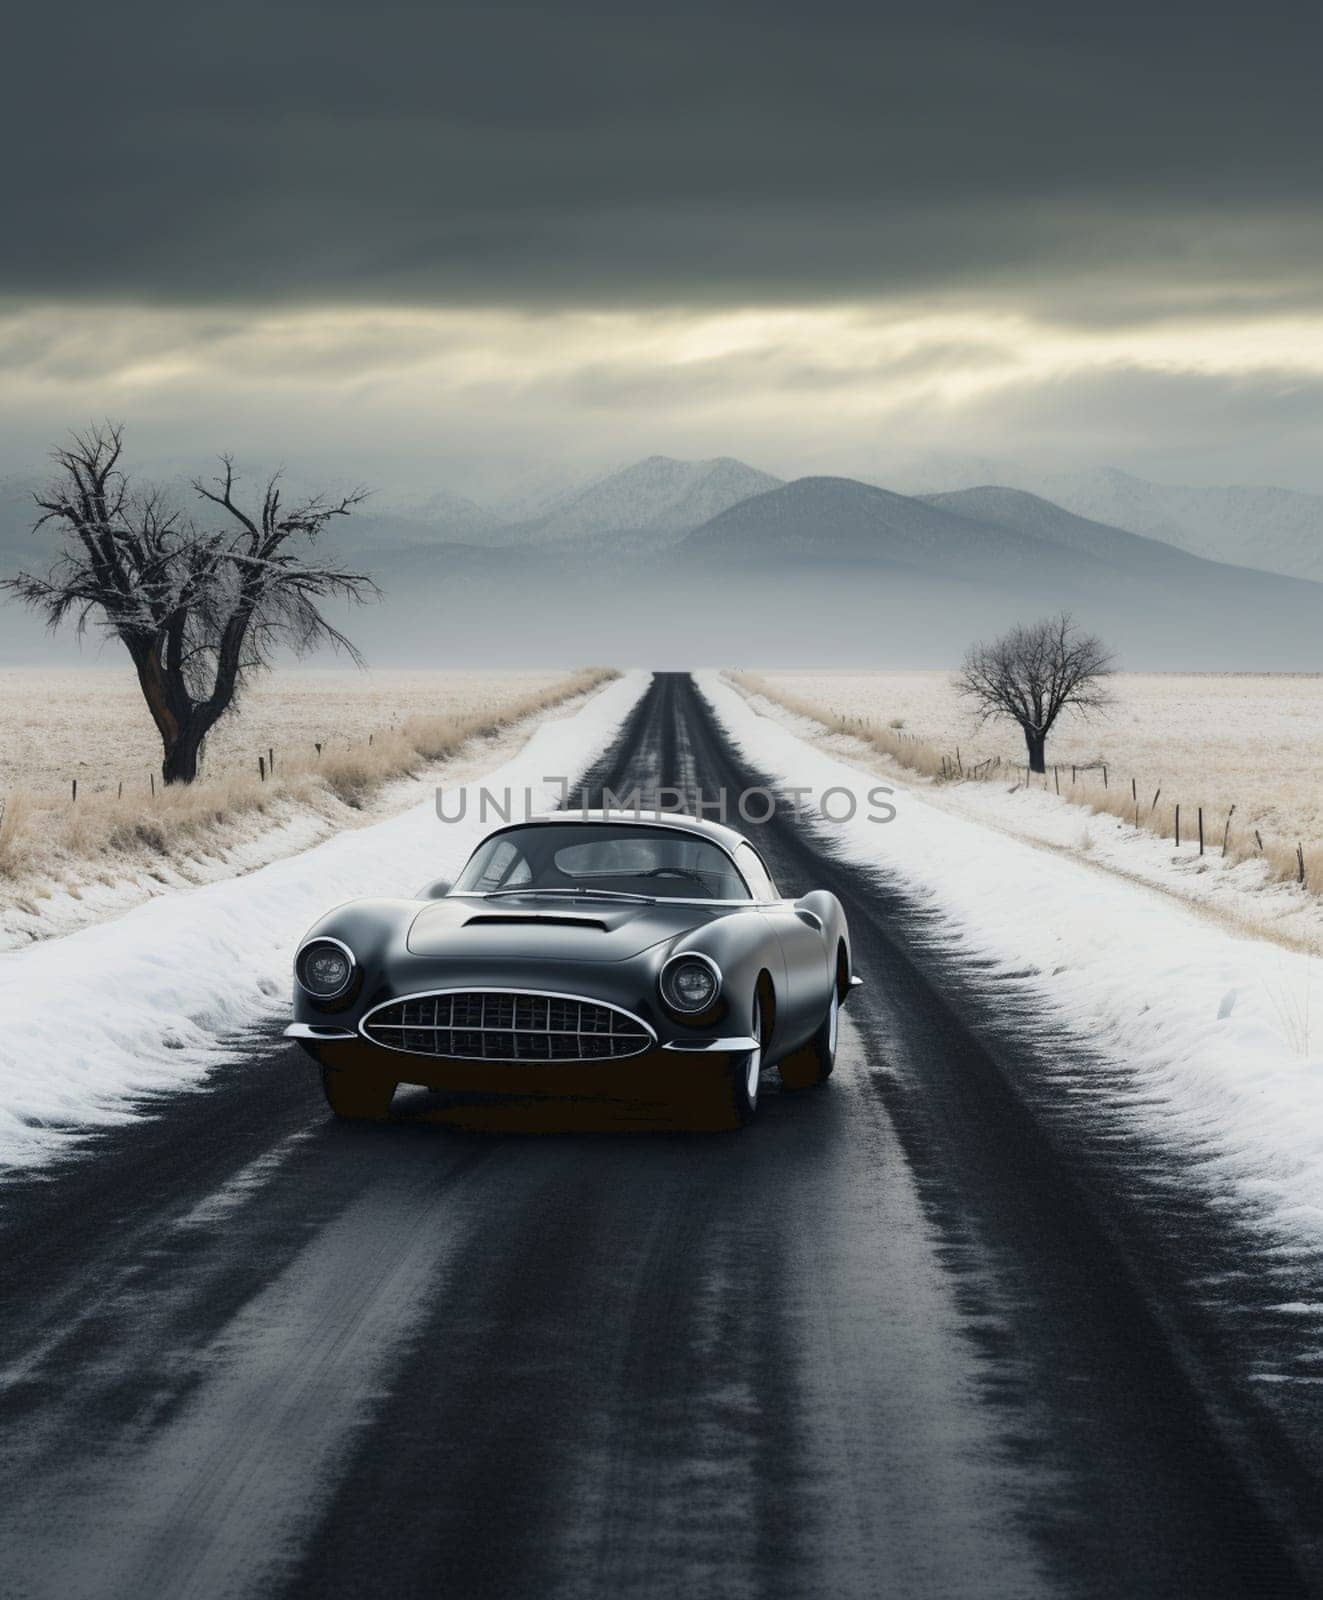 Awesome jet black vintage race car - 3D Illustration by Andelov13